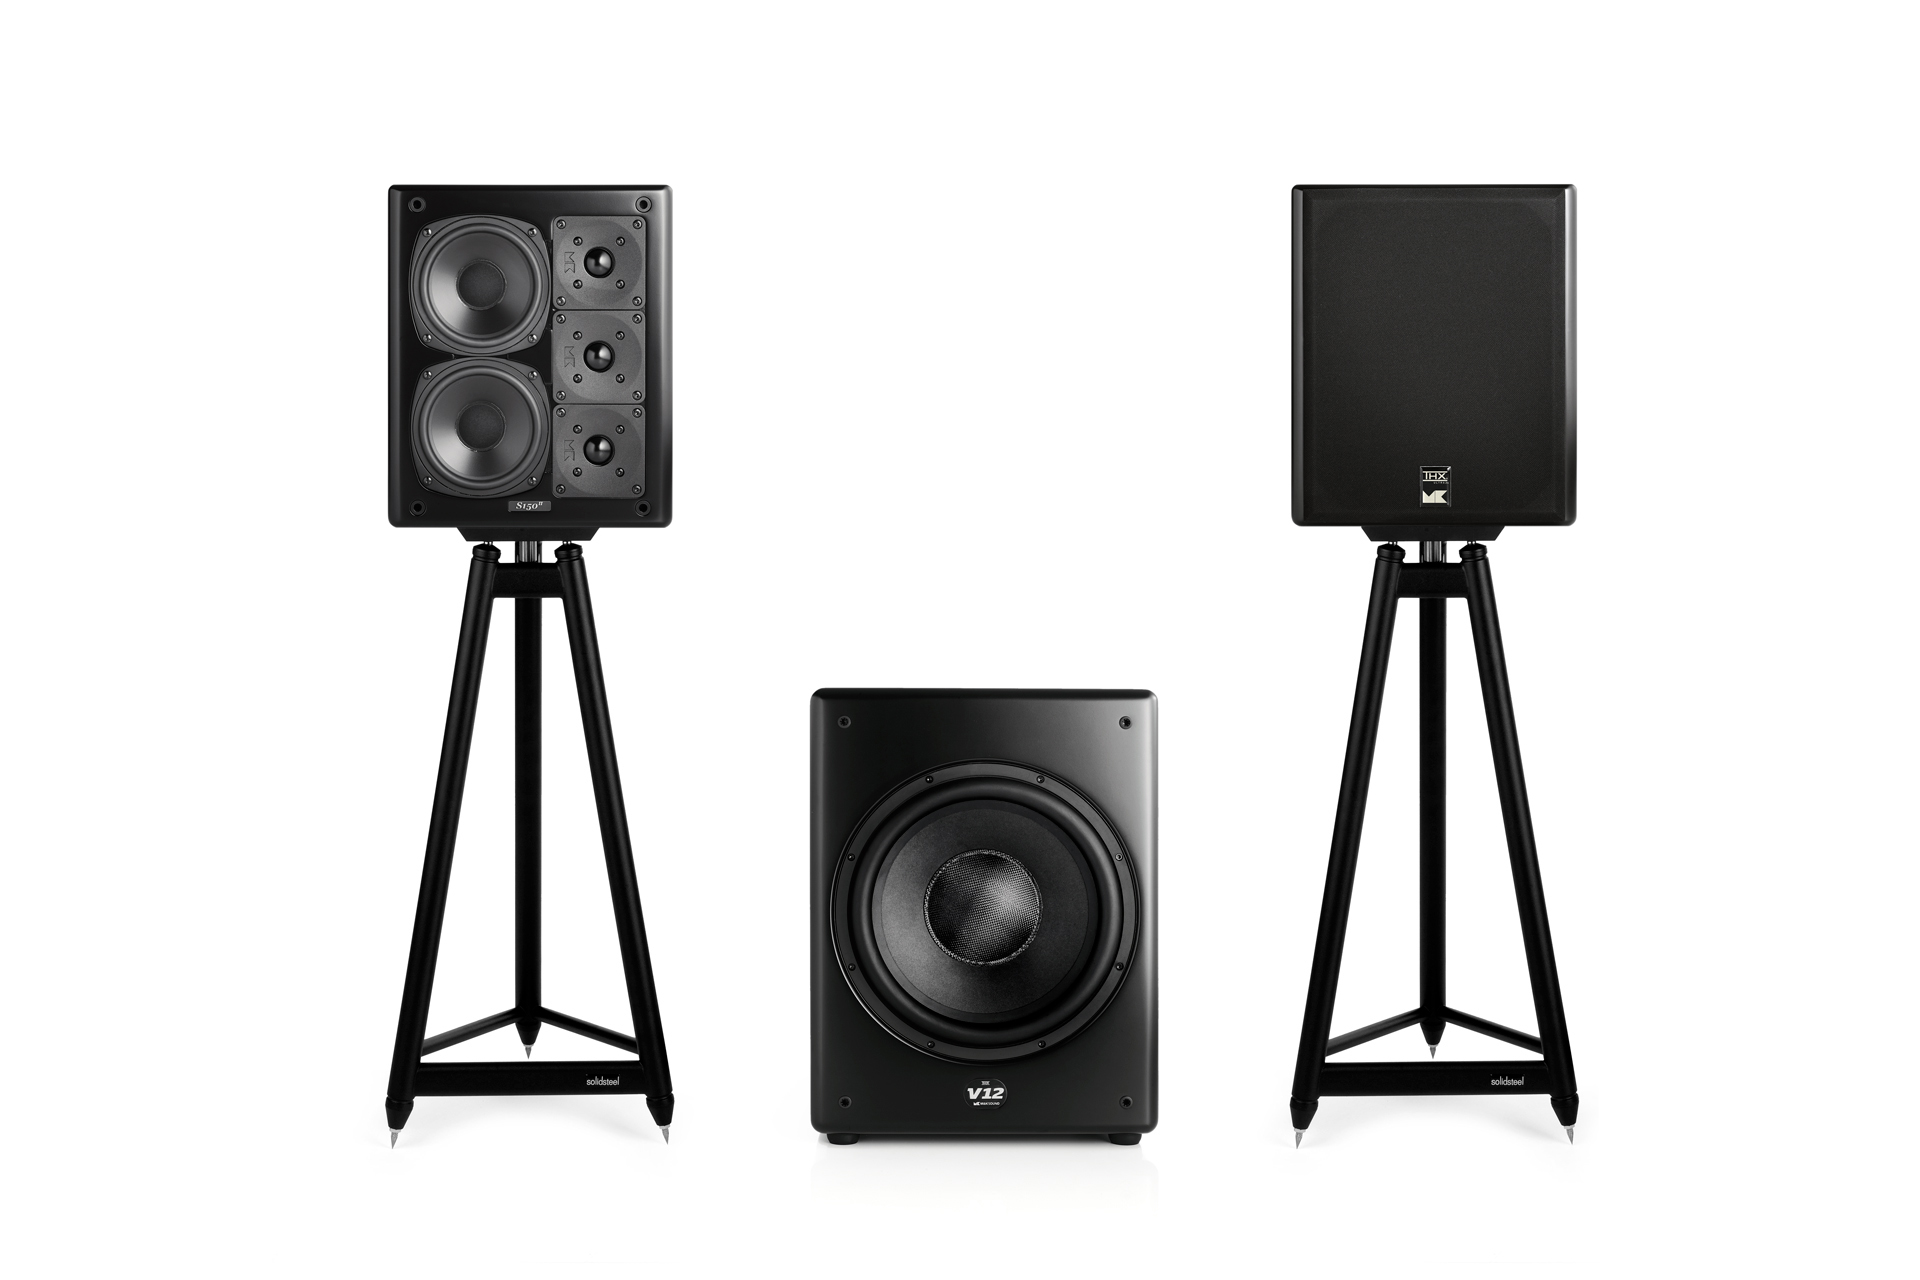 M&K Sound S150 speakers and V12 subwoofer